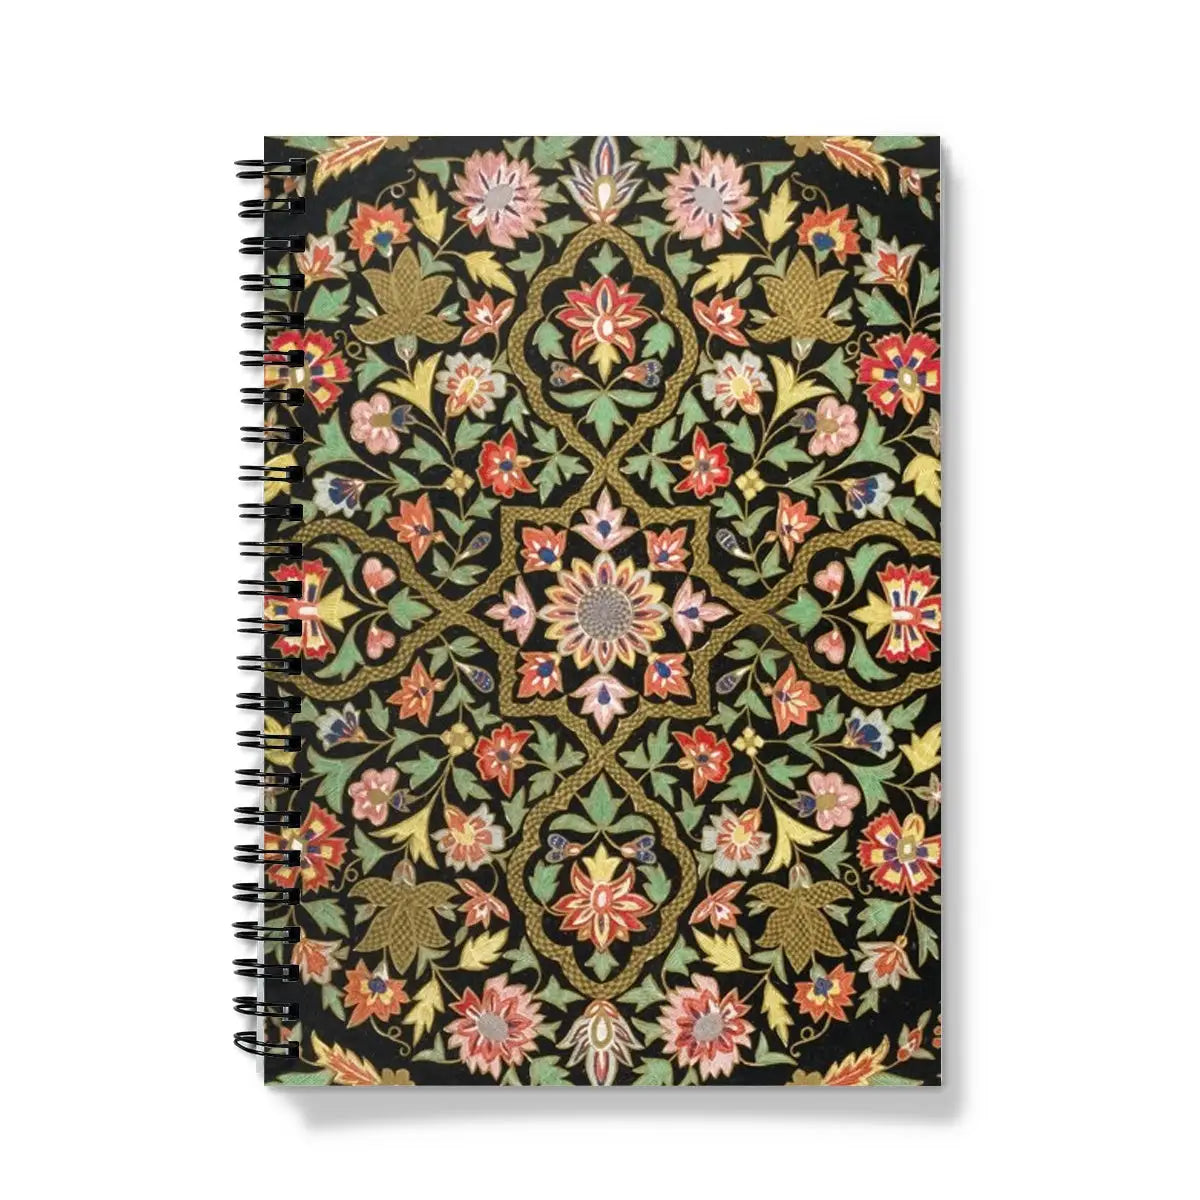 Indian Embroidery Artwork - Matthew Digby Wyatt Notebook - A5 / Graph - Notebooks & Notepads - Aesthetic Art